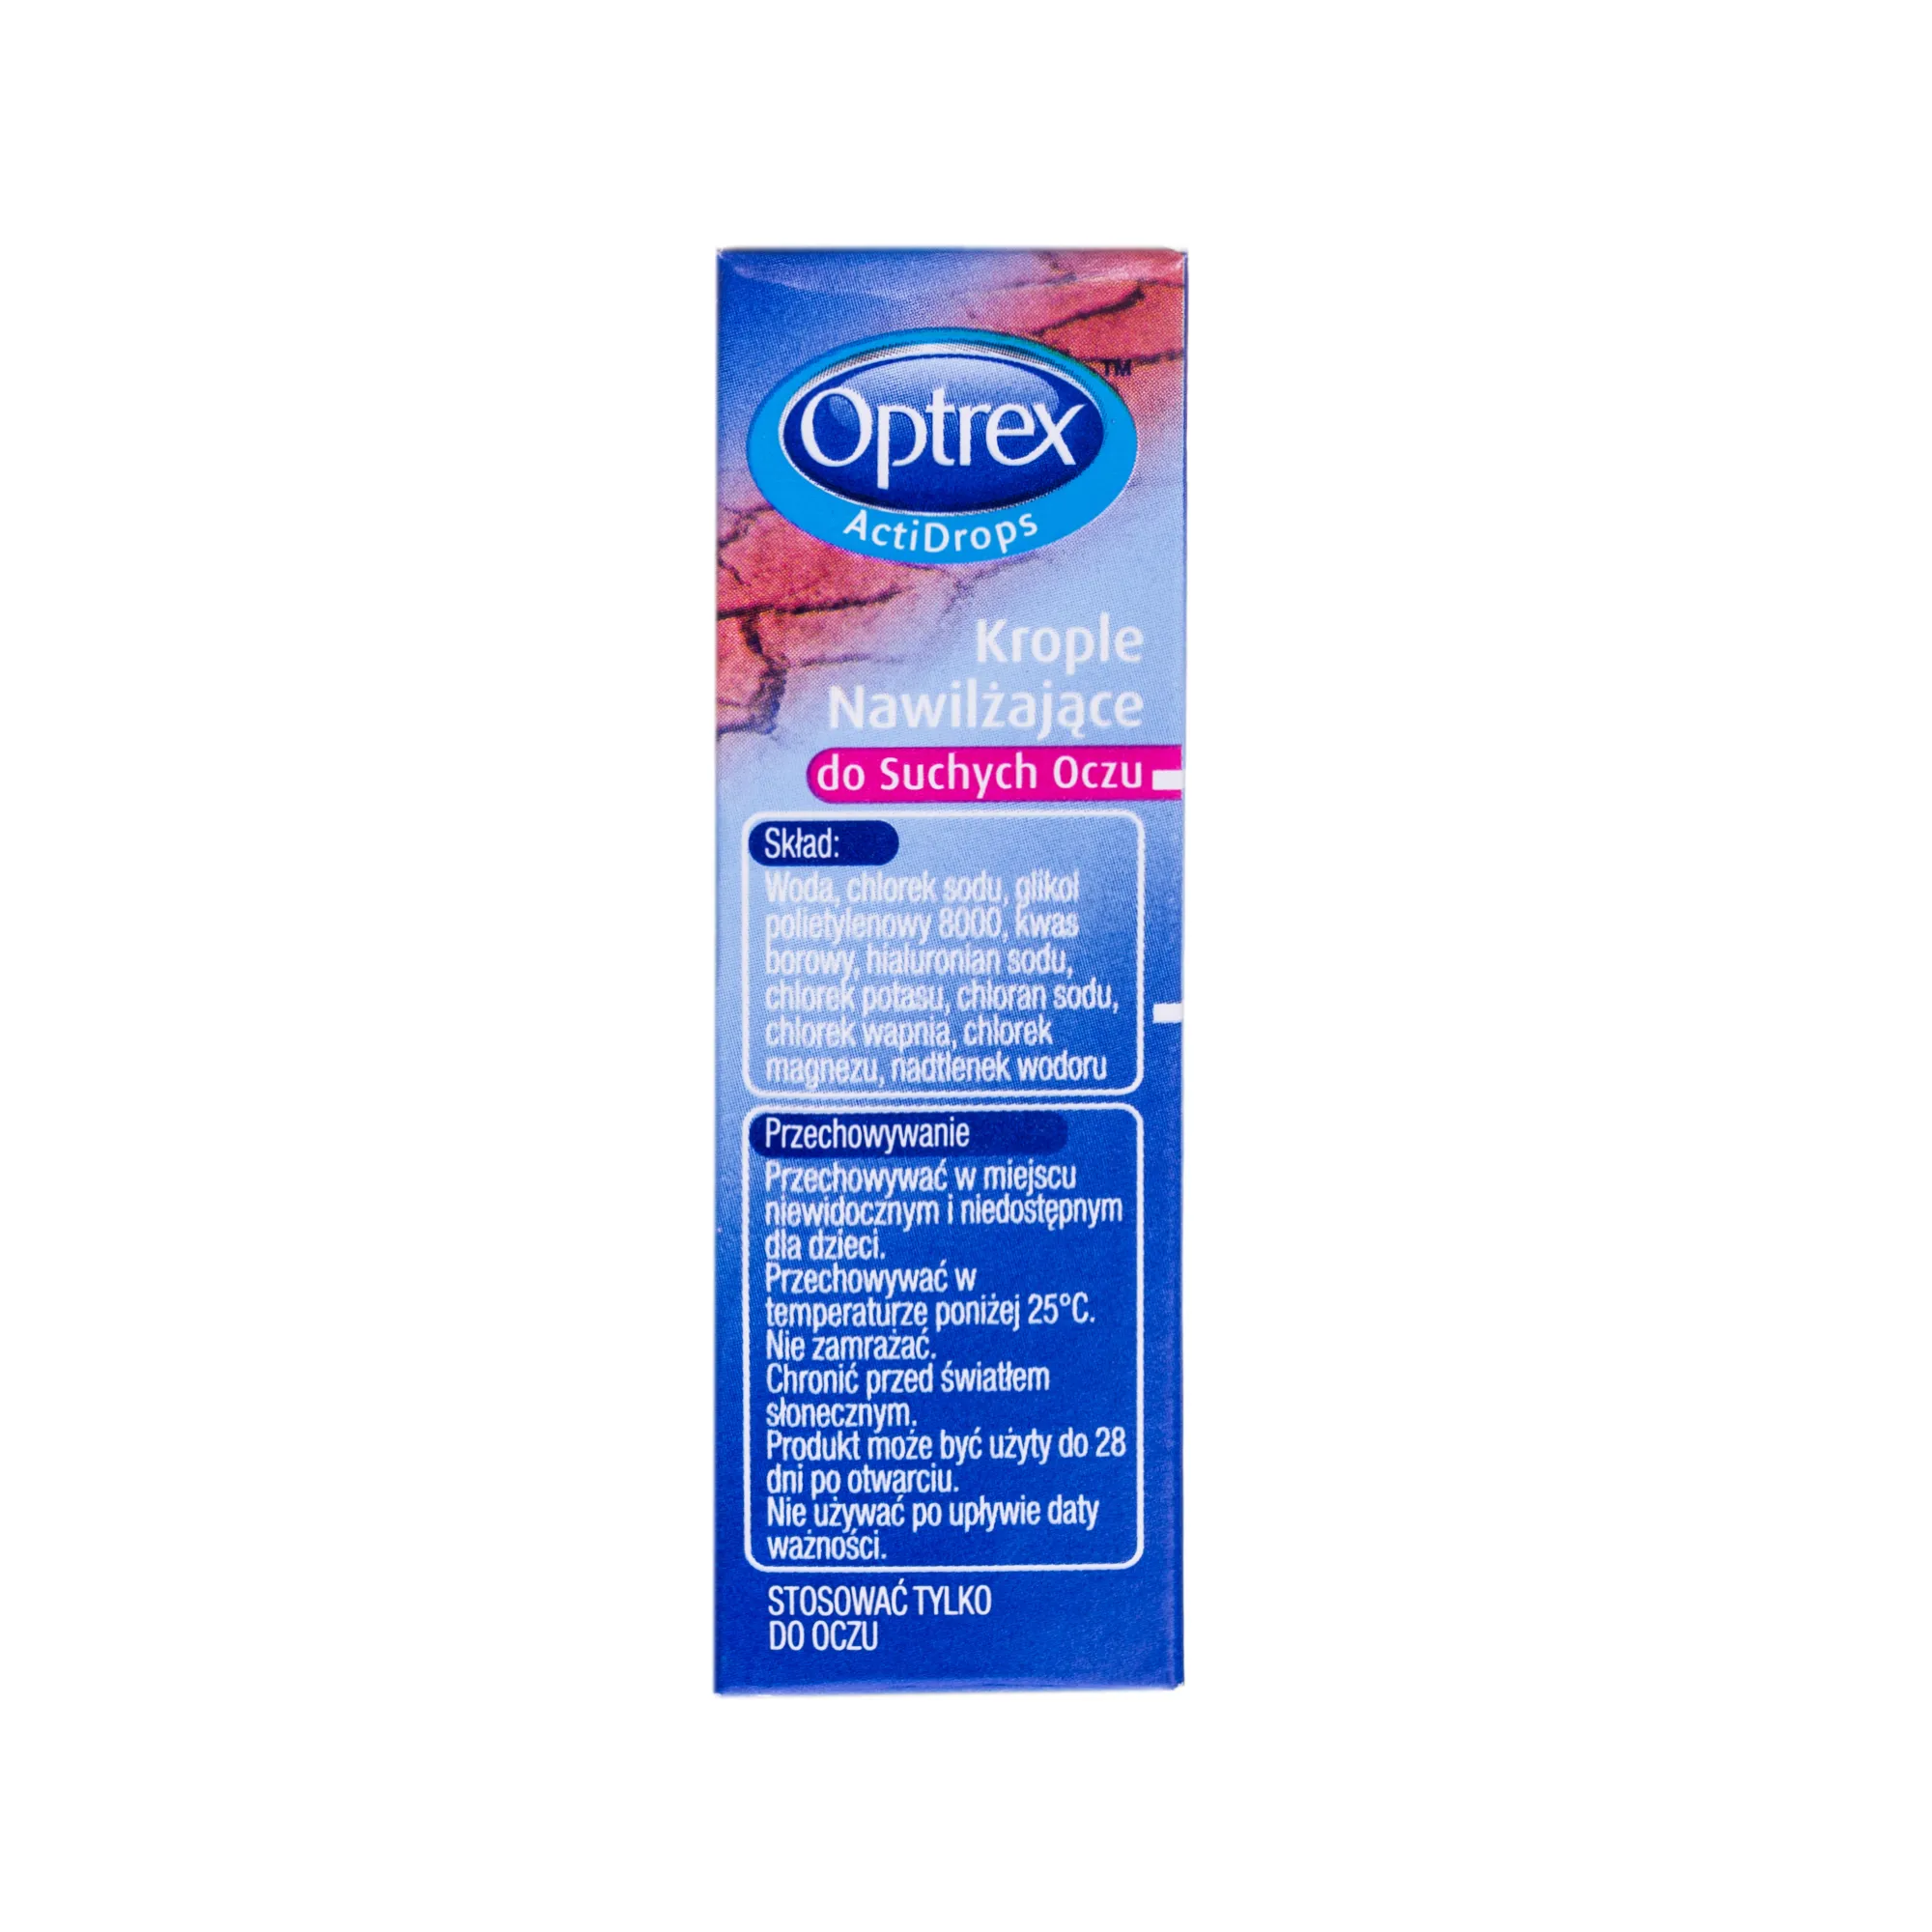 Optrex Actidrops, krople nawilżające do suchych oczu, 10 ml 